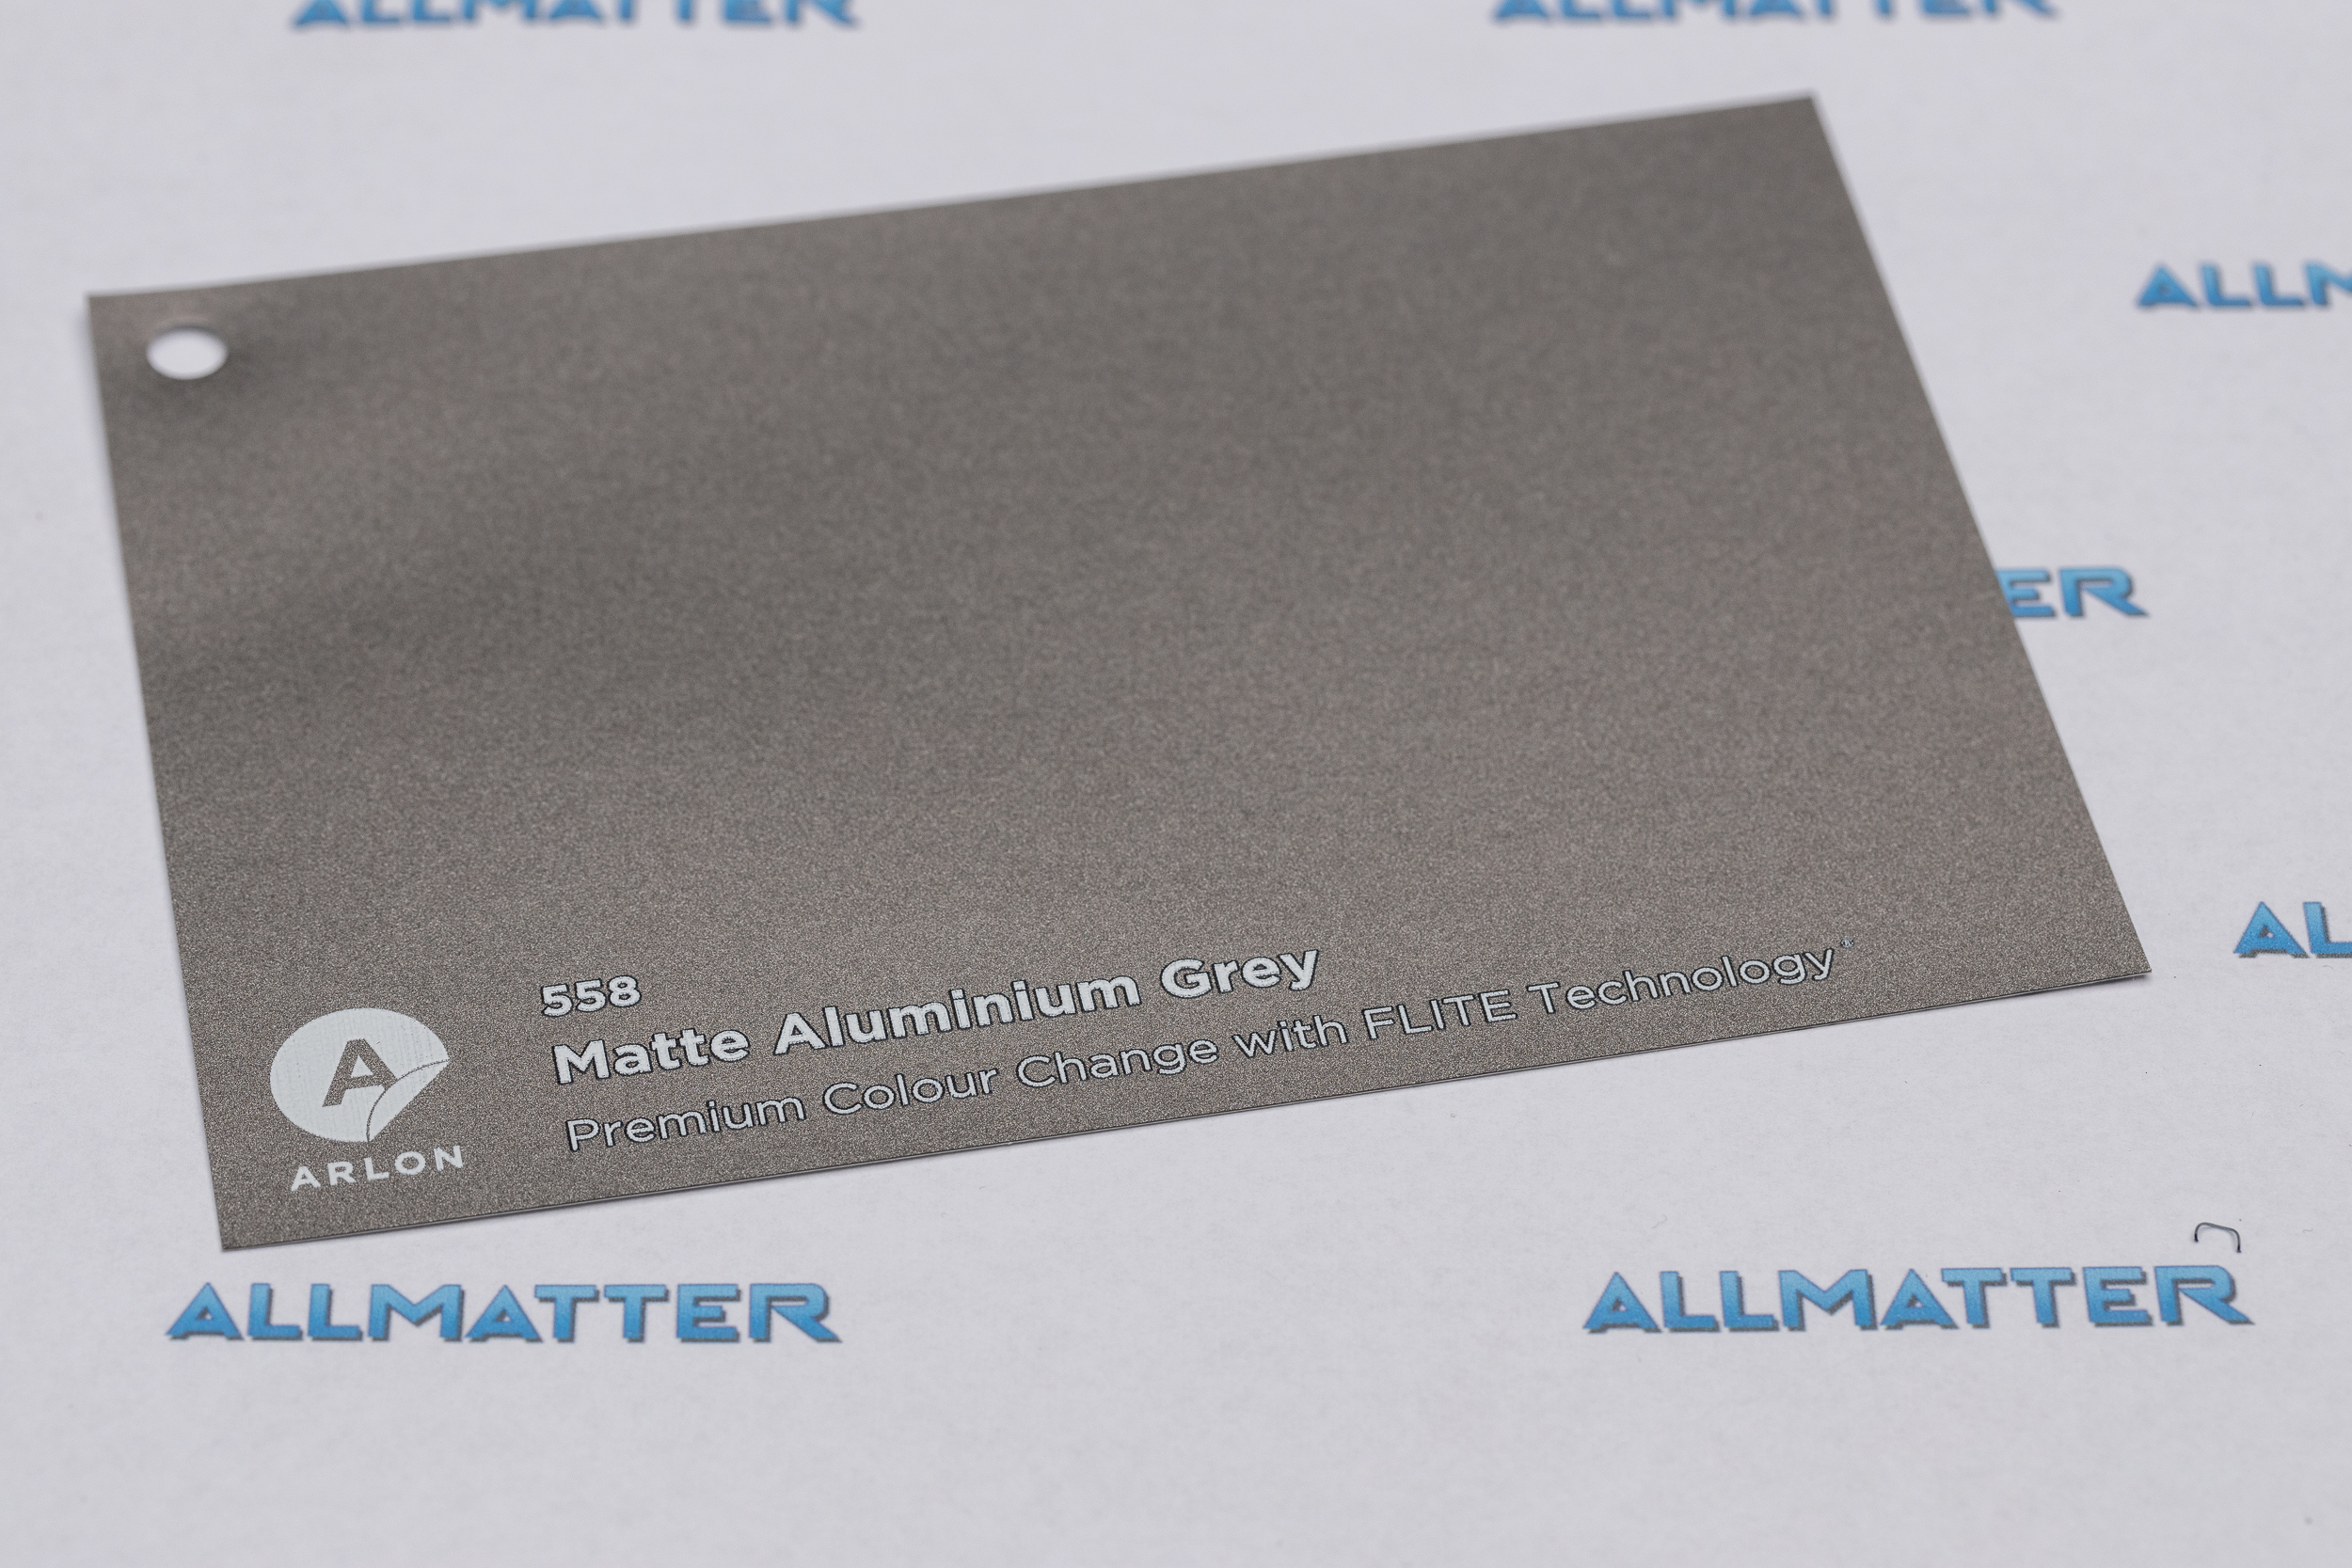 Arlon PCC - Matte Aluminium Grey - 558